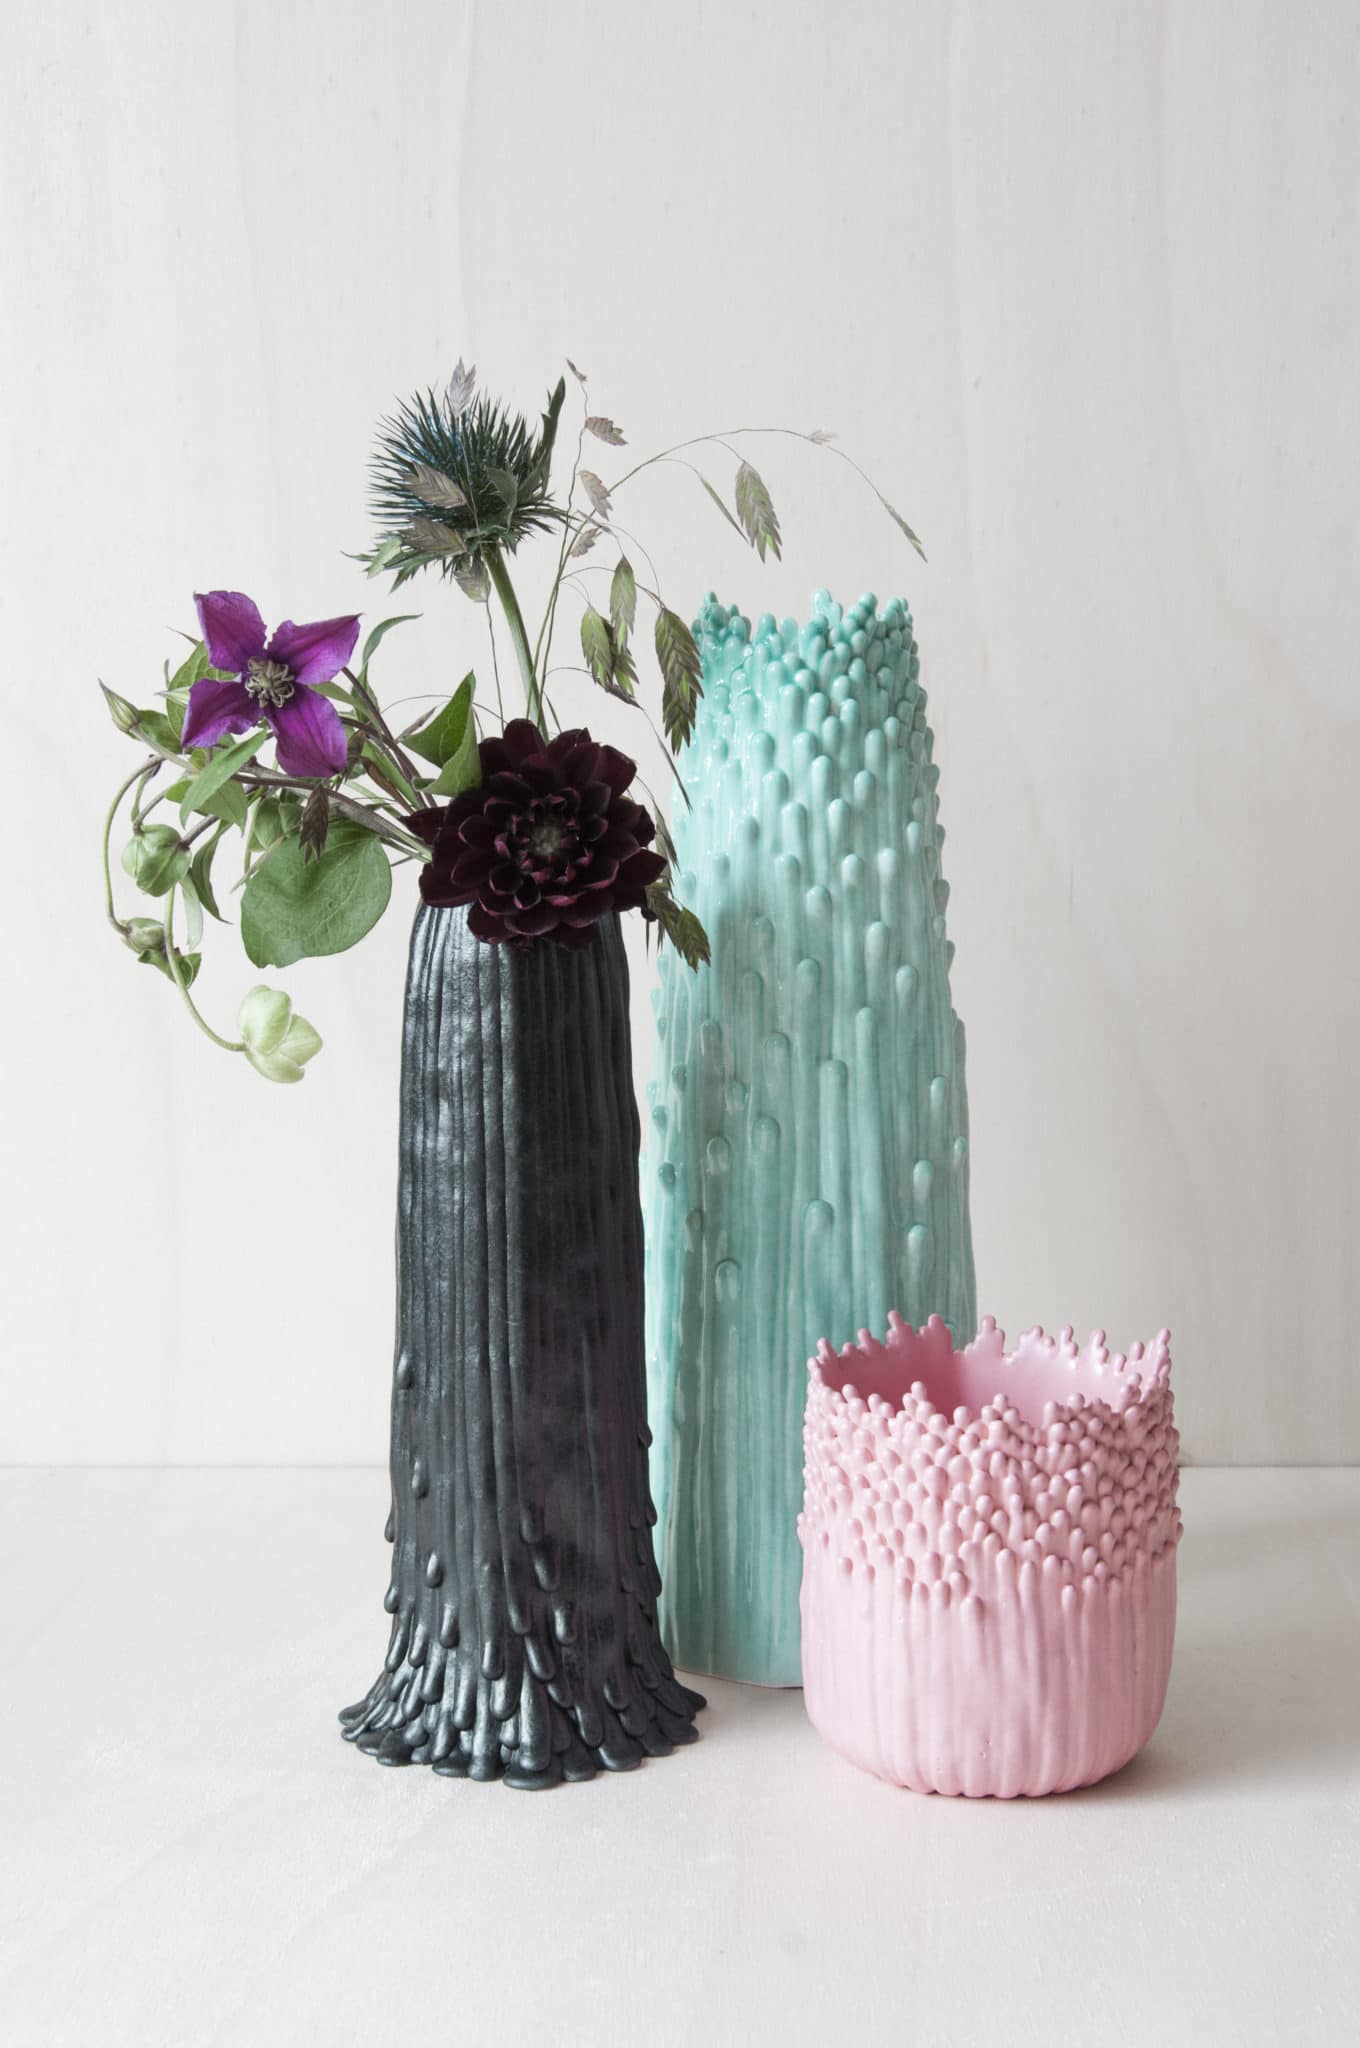 Série de vases de Cécile Bichon exposés à l'occasion de Art Elysées 2019